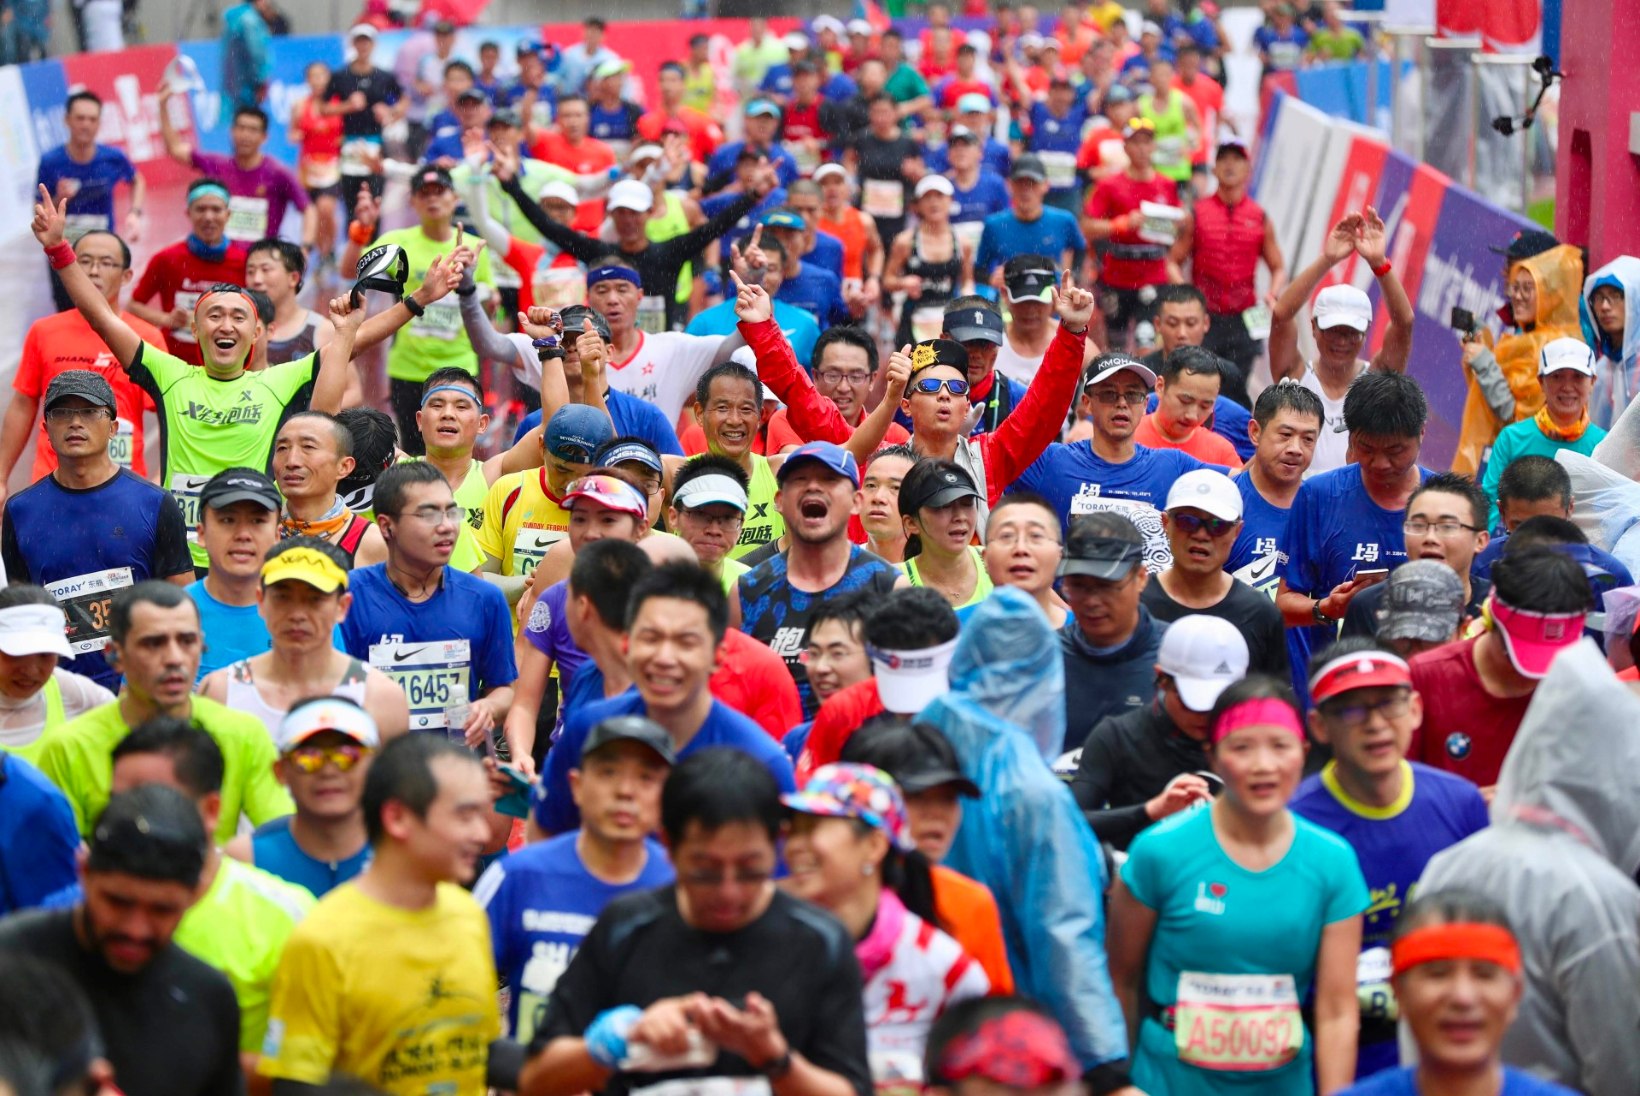 Hiinas peetud poolmaratonil jäi vahele koguni 258 sohitegijat